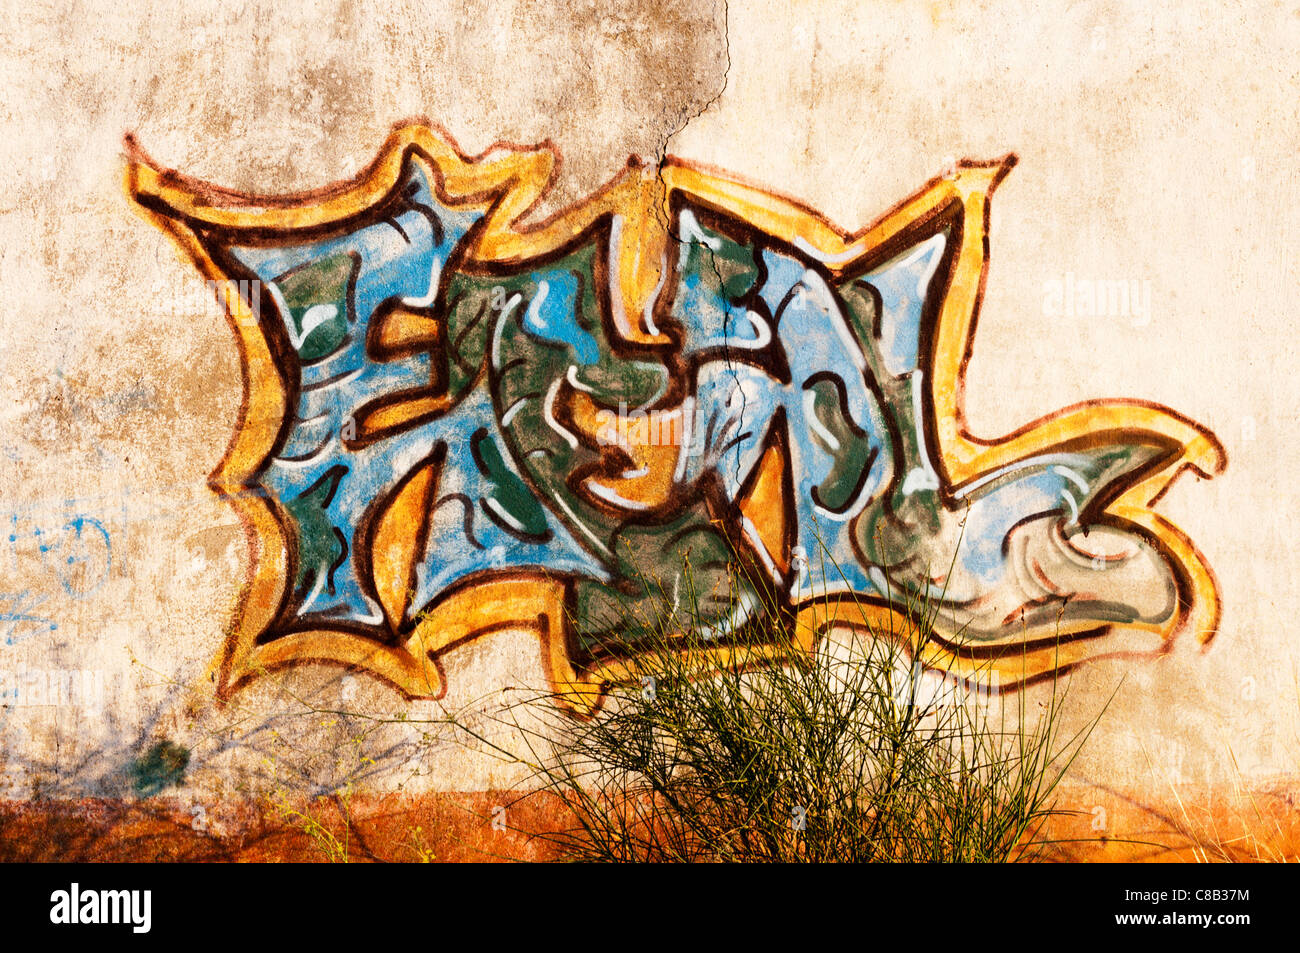 Graffiti am Camp de Rivesaltes zwischen Rivesaltes und Perpignan in Südfrankreich.  SIEHE BESCHREIBUNG FÜR DIE GESCHICHTE DER WEBSITE. Stockfoto